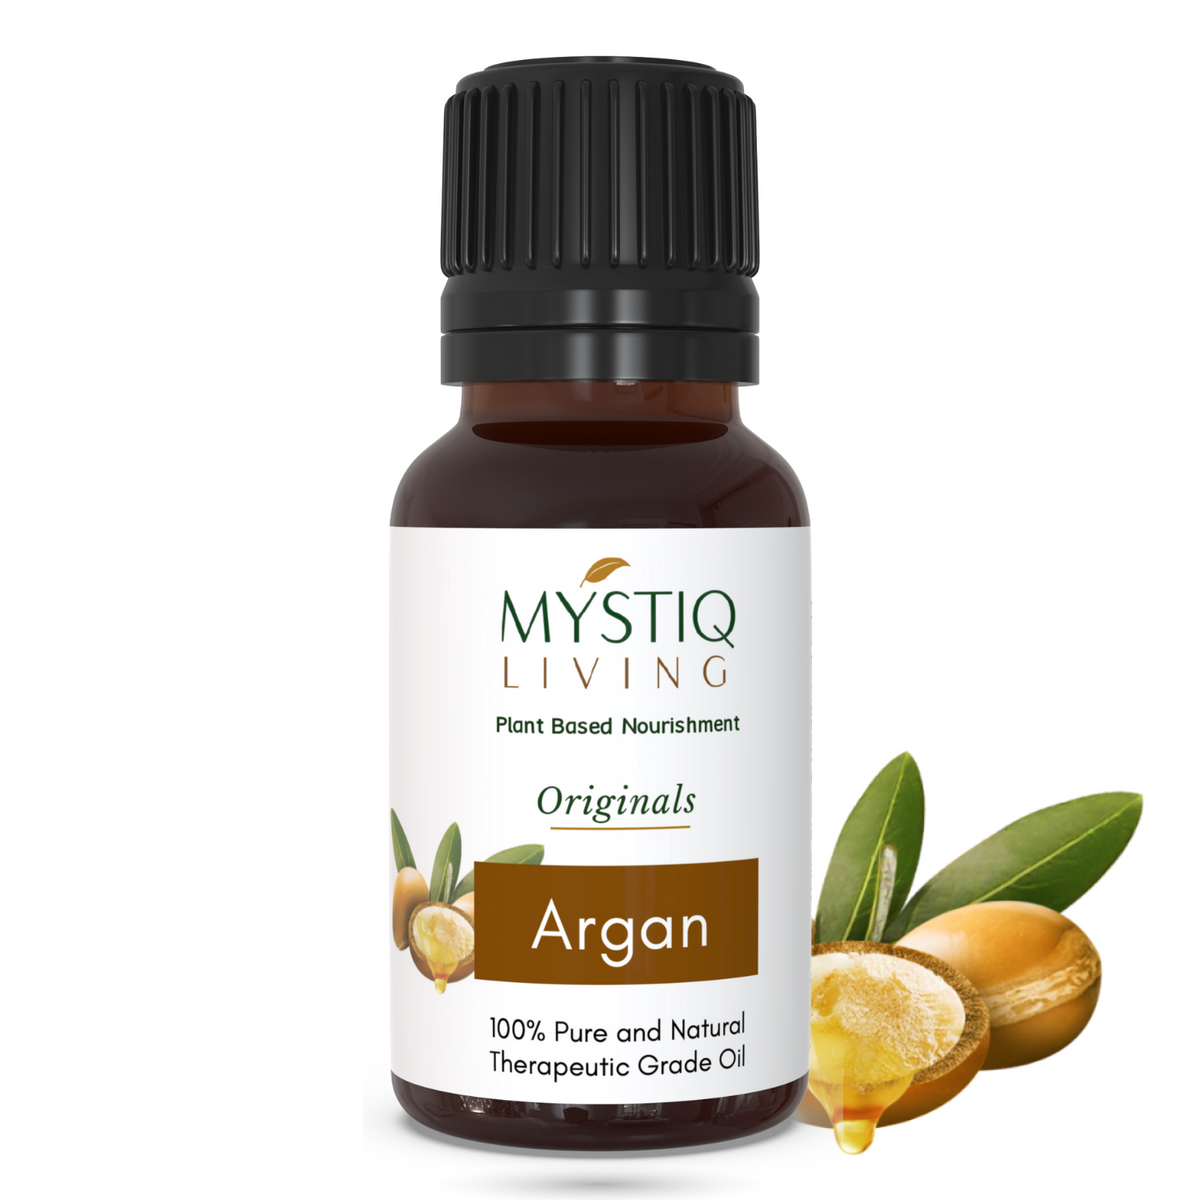 Morrocan Argan Oil - Mystiq Living